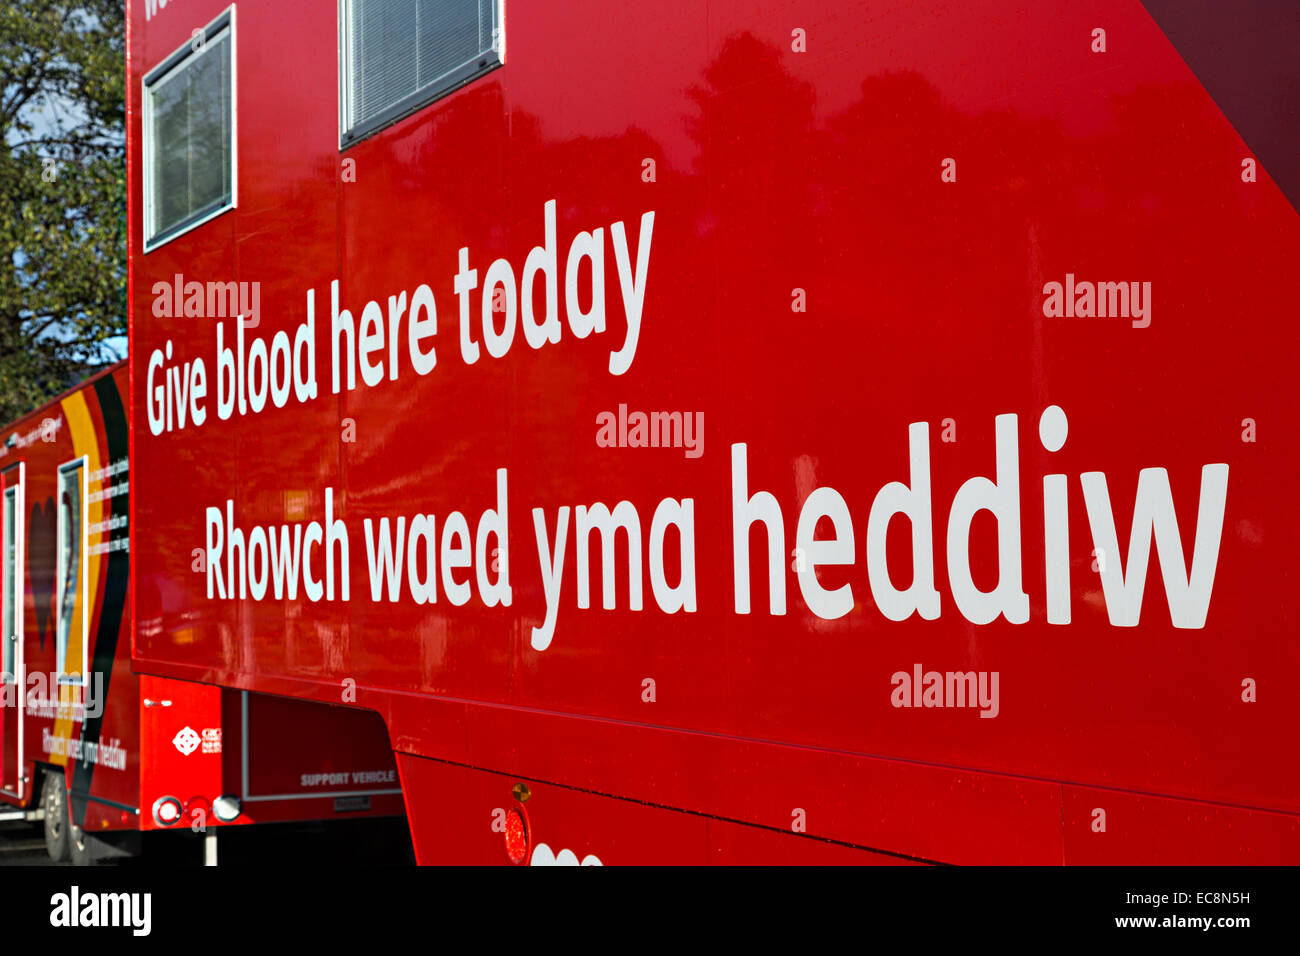 Dar sangre hoy aquí mobile van en inglés y galés, Abergavenny, Wales, REINO UNIDO Foto de stock